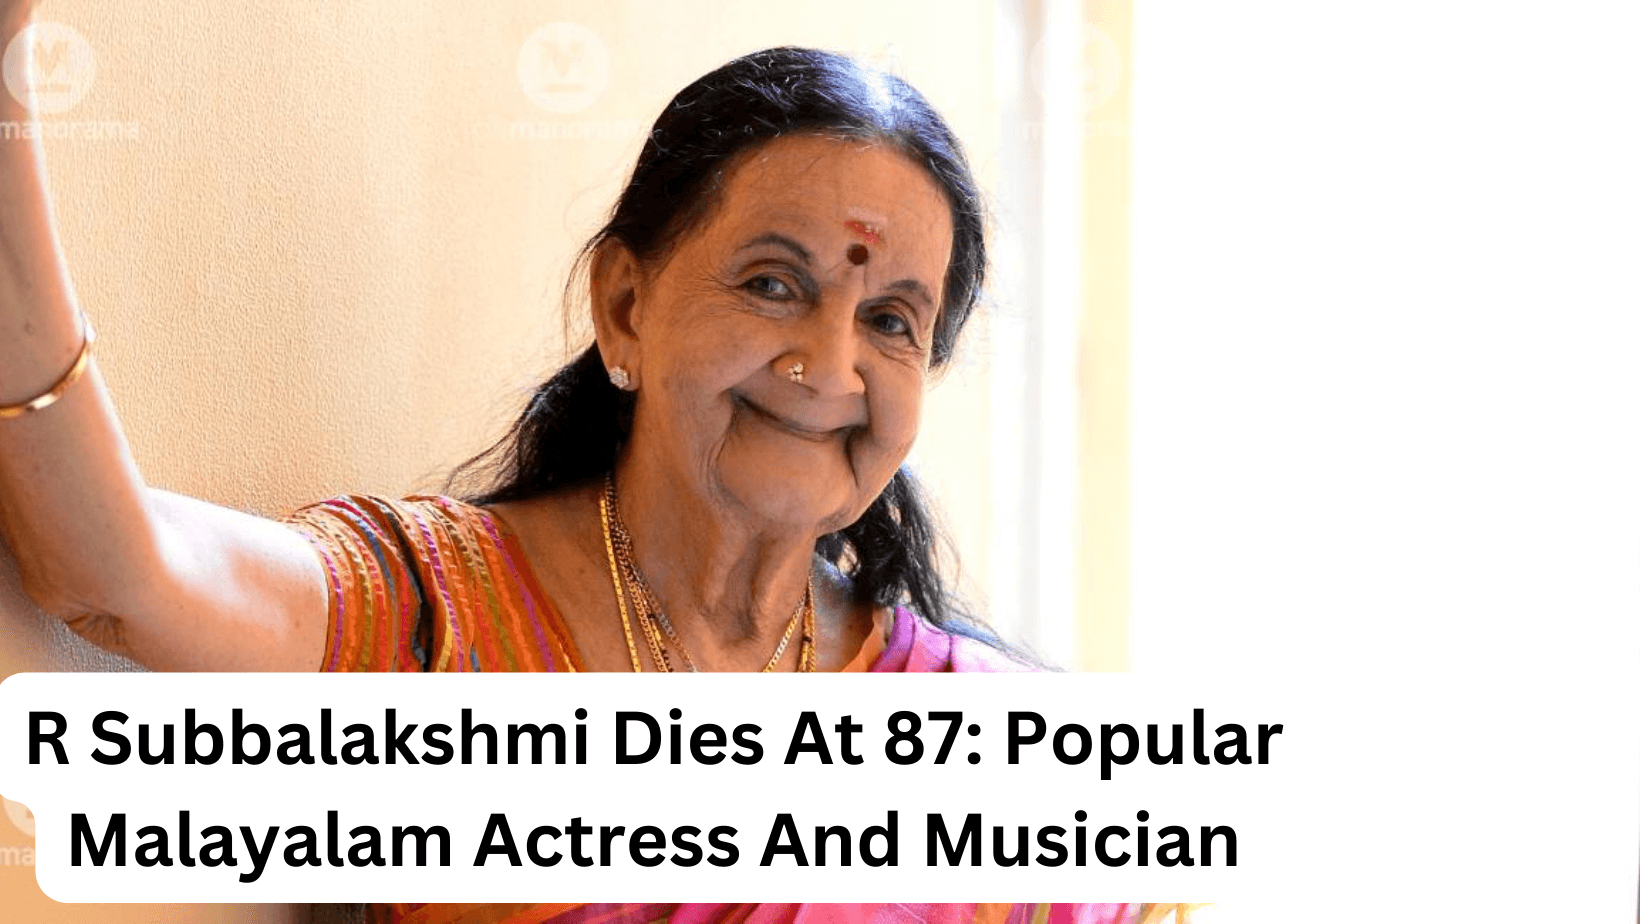 Popular Malayalam Actress And Musician R Subbalakshmi Dies At 87